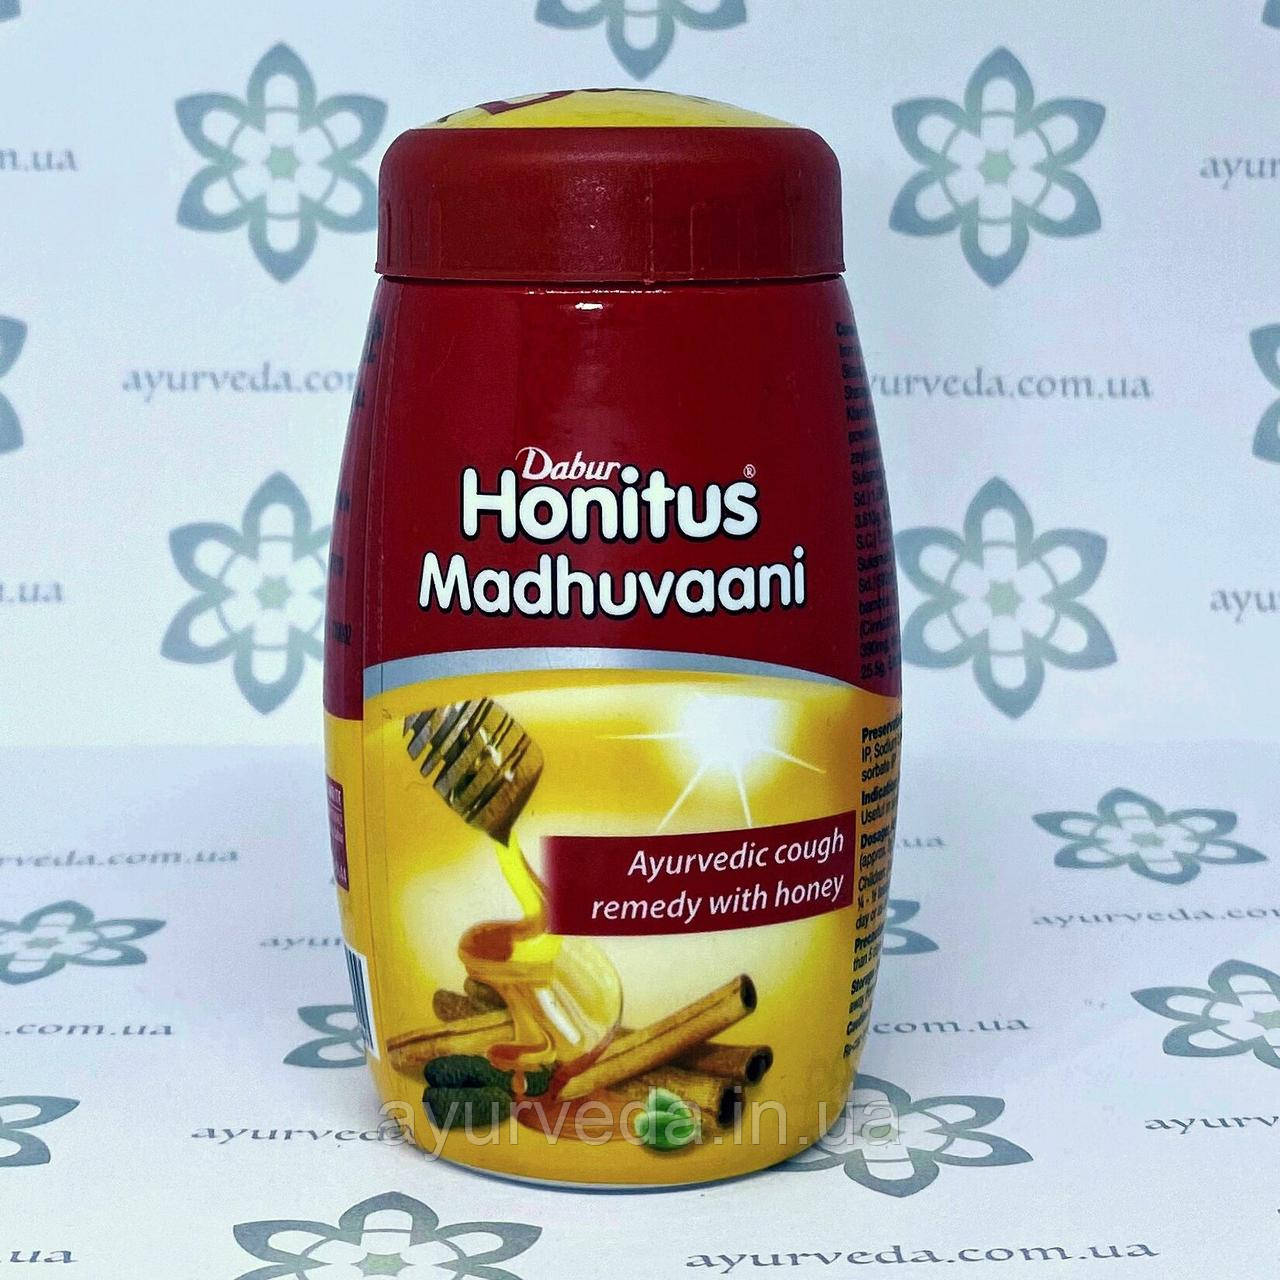 Honitus Madhuvani Dabur (Хонітус Мадхувані) 150 г. проти кашлю, застуди й ангіни, противірусну, лікує грип